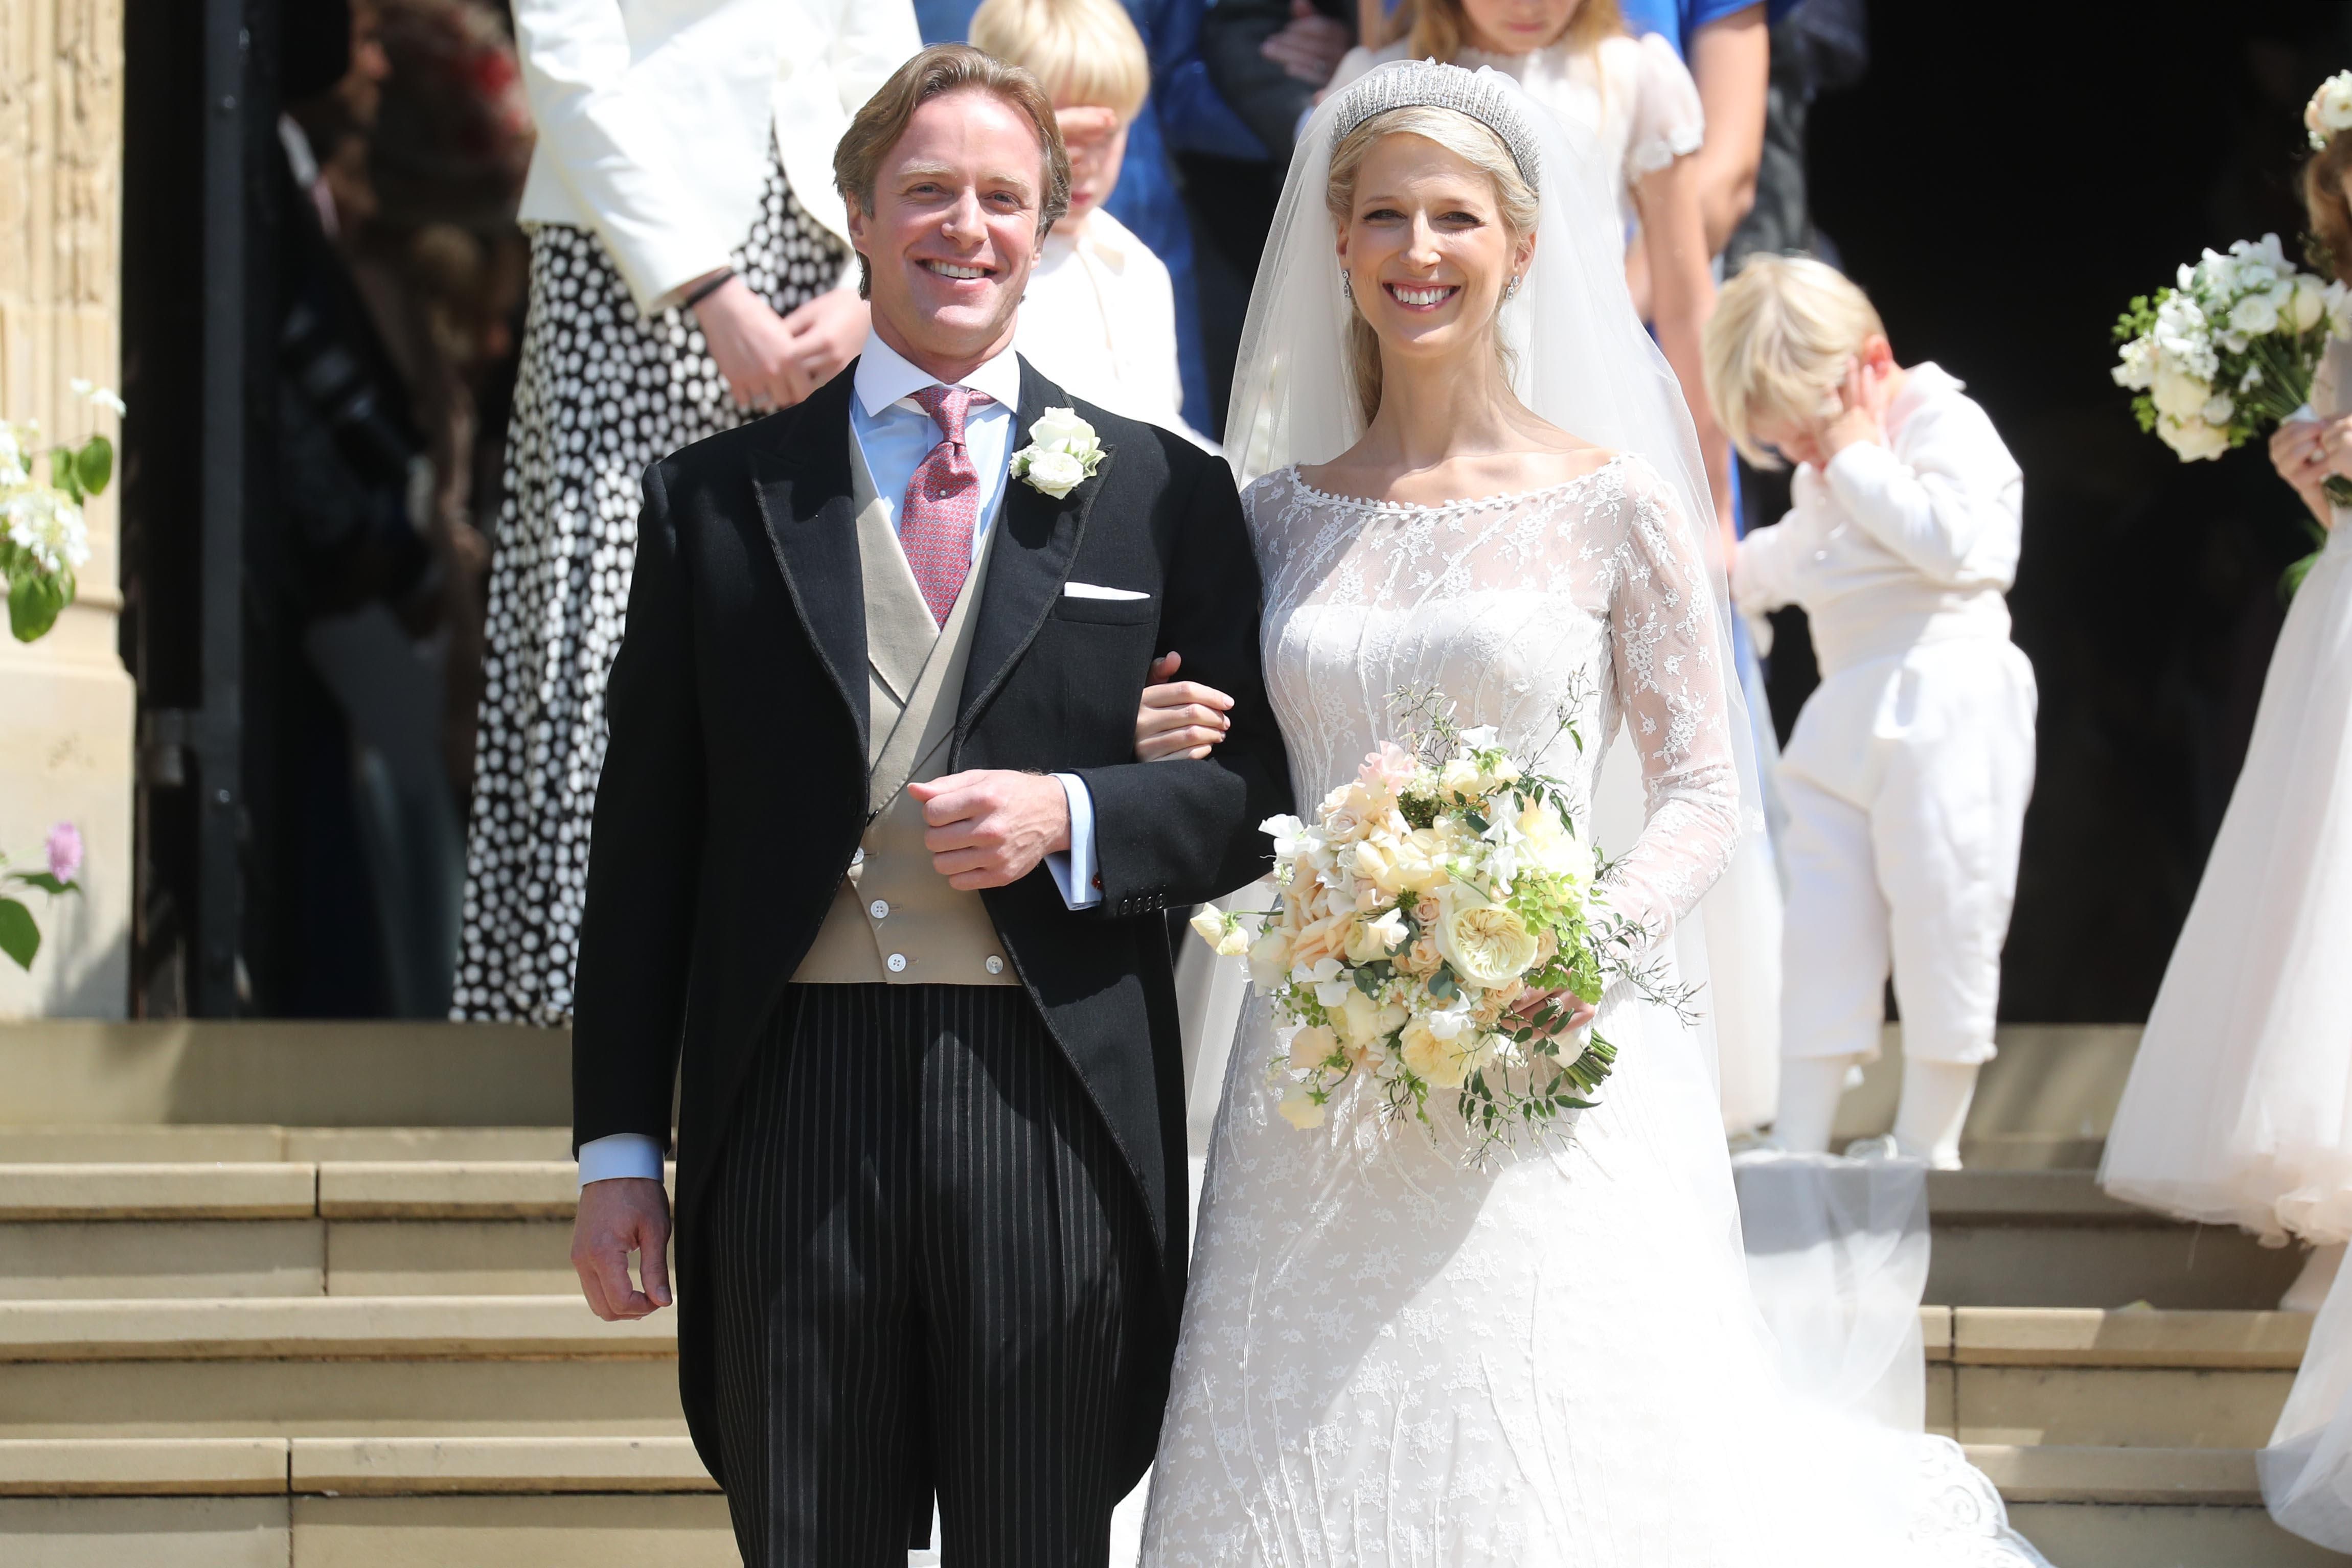 Королівське весілля: у Великобританії вийшла заміж леді Габріелла Віндзор 